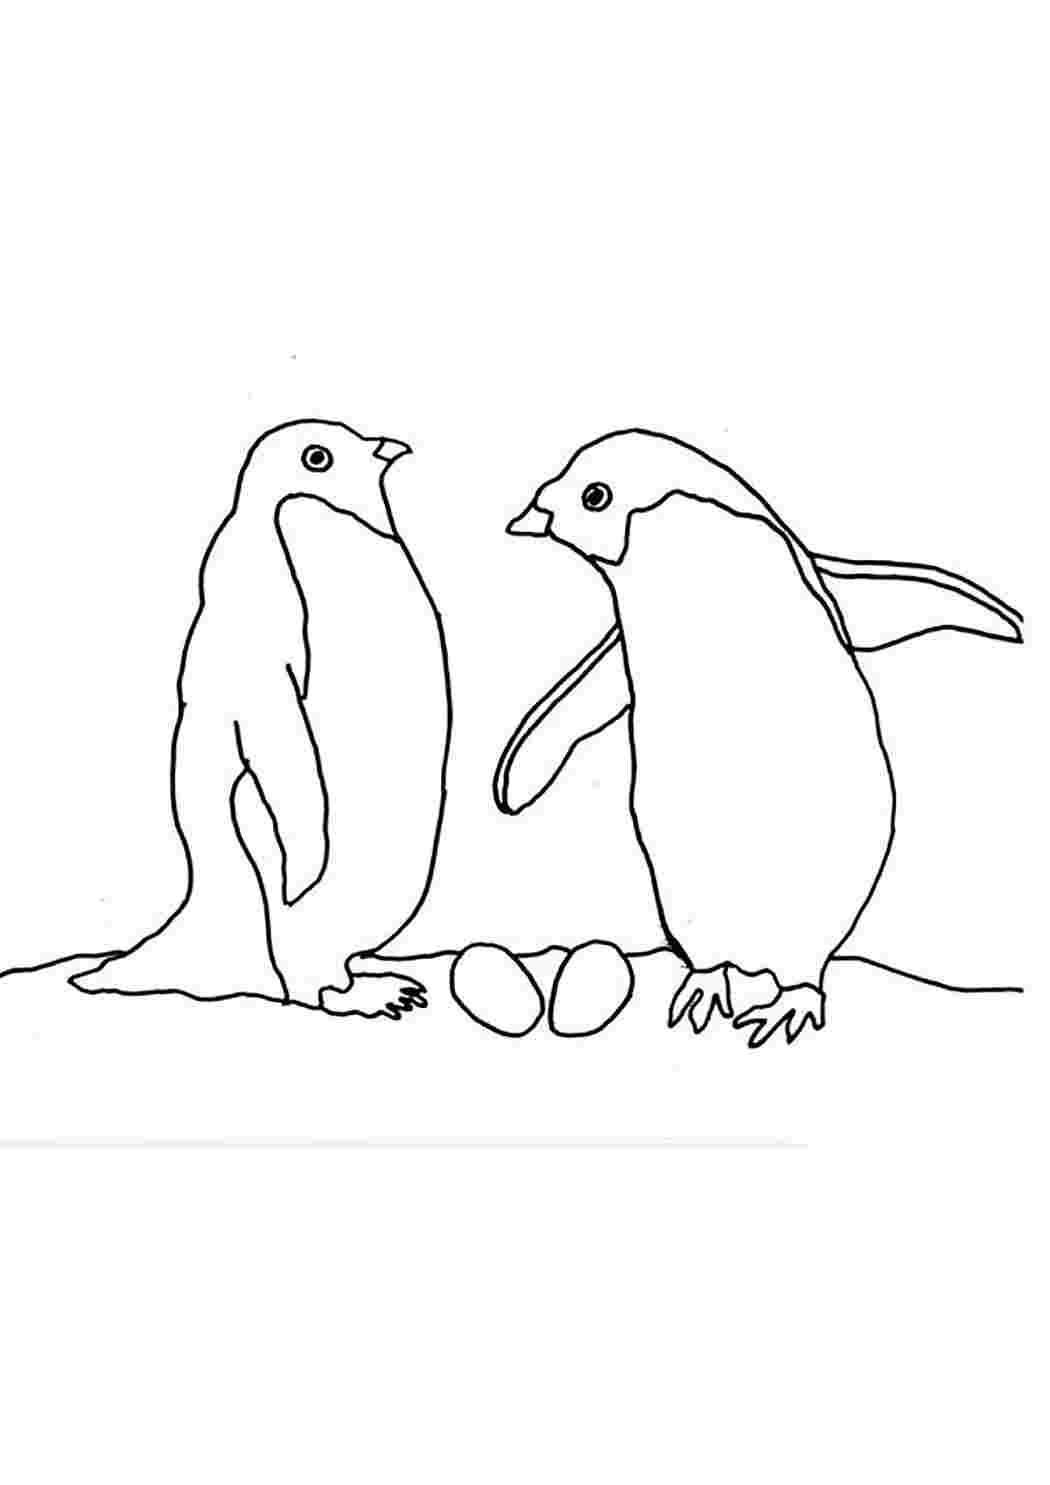 Раскраска Рисунок пингвина распечатать - Пингвины